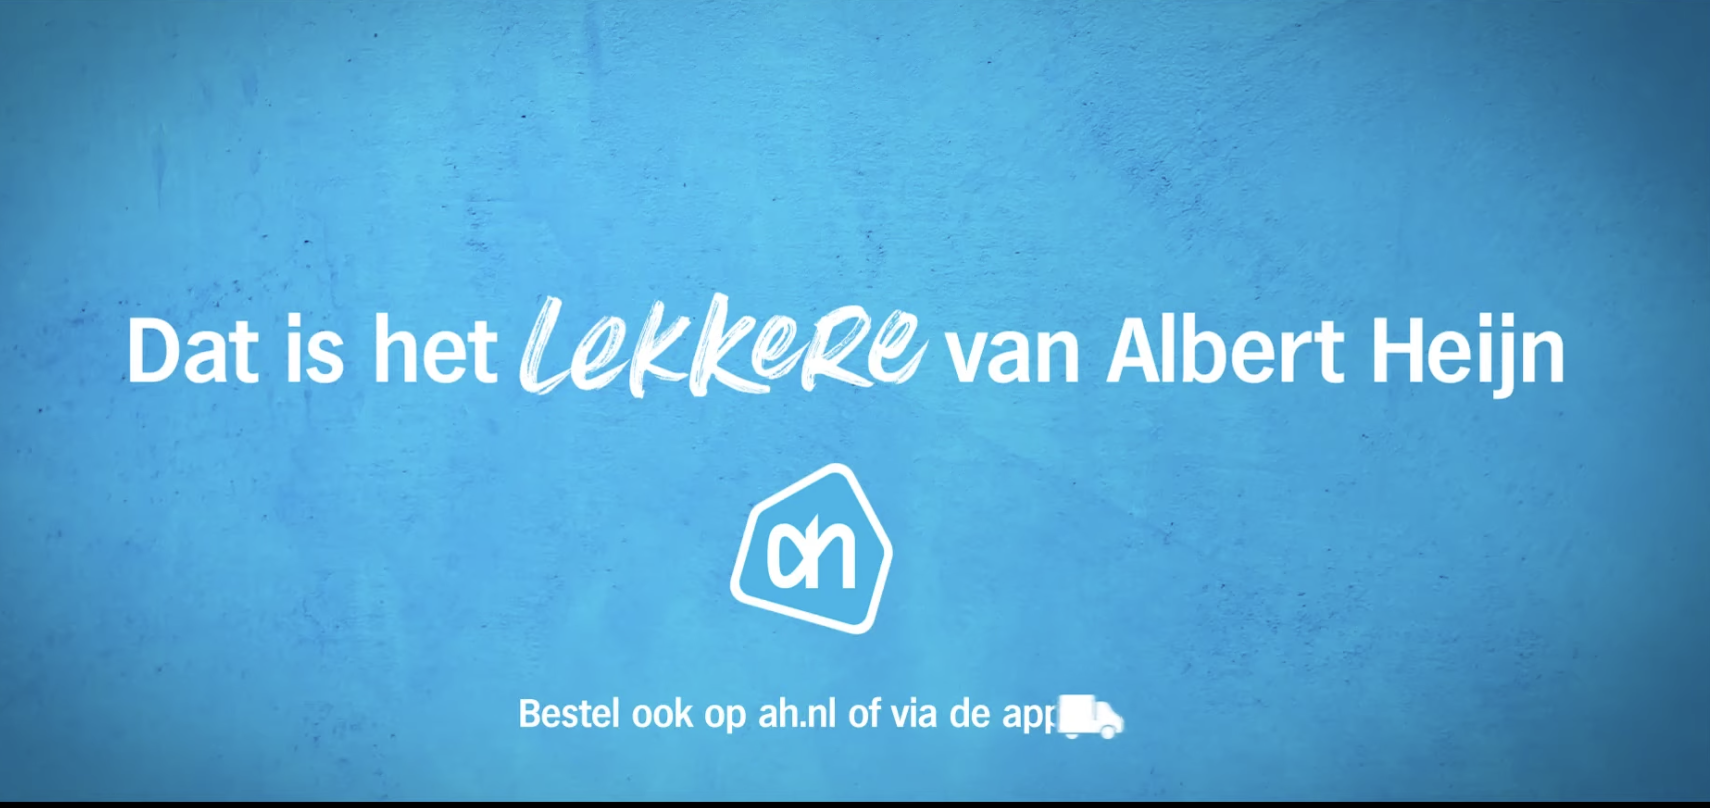 Albert Heijn heeft meest succesvolle sound logo van Nederland